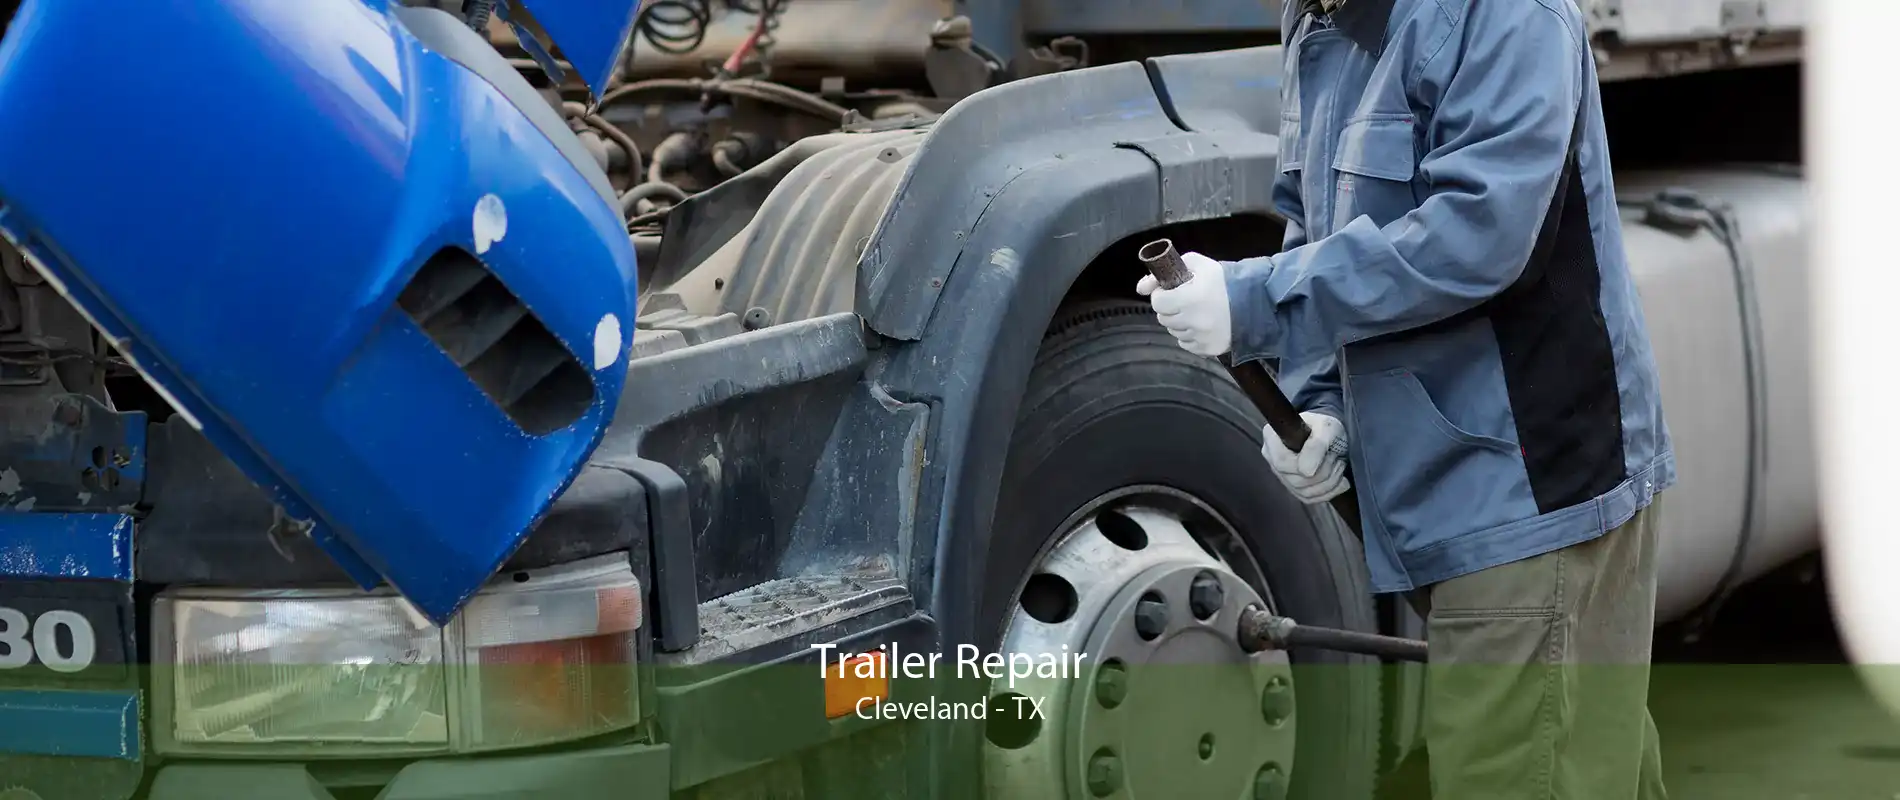 Trailer Repair Cleveland - TX